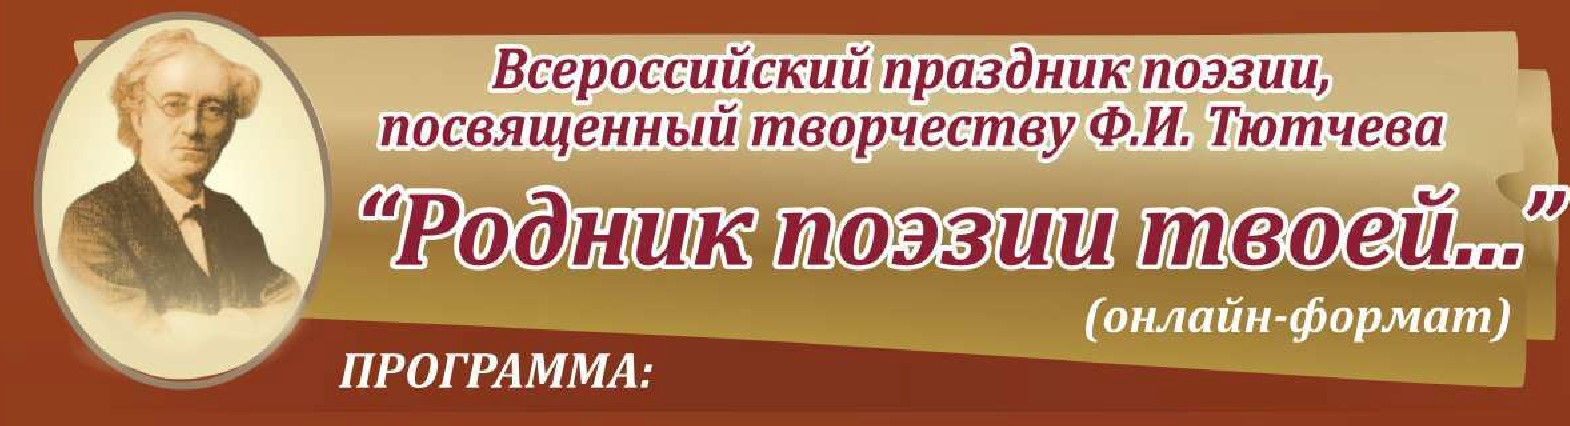 Программа Всероссийского праздника поэзии, посвящённого творчеству Ф.И.Тютчева